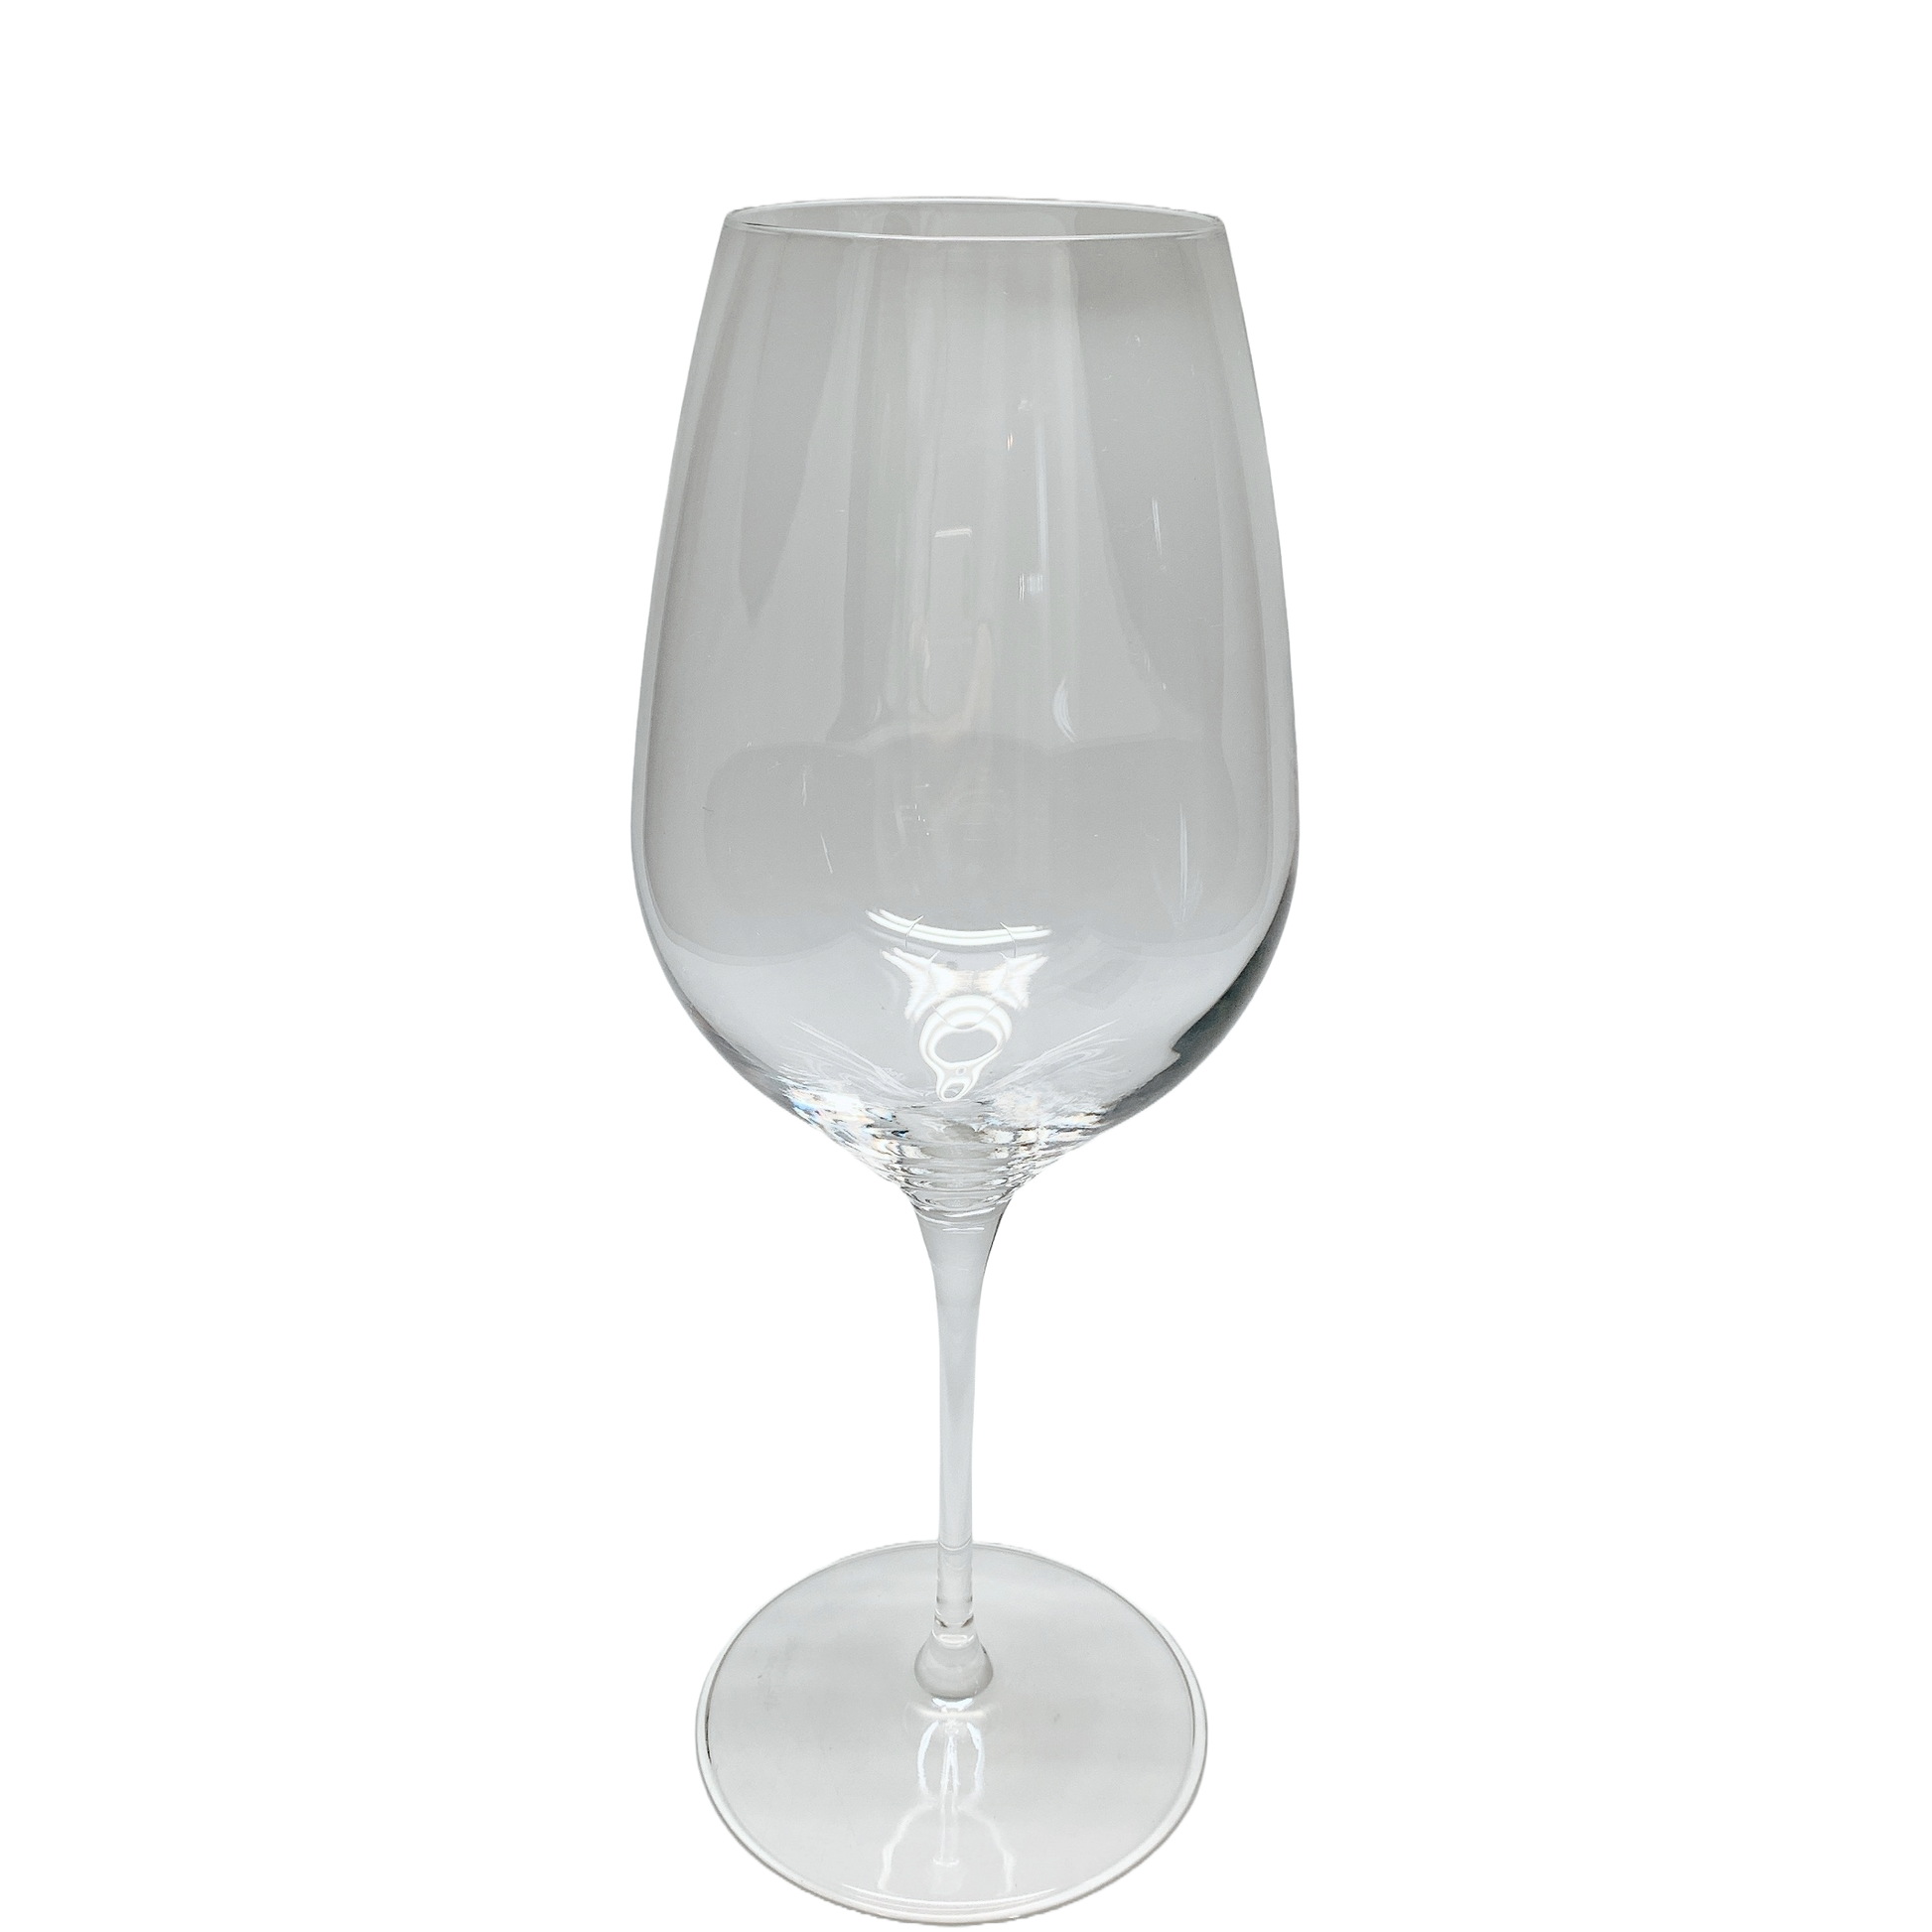 ブランシェ・アソシエ ワイングラス プレミアム モデル No14 6個セット